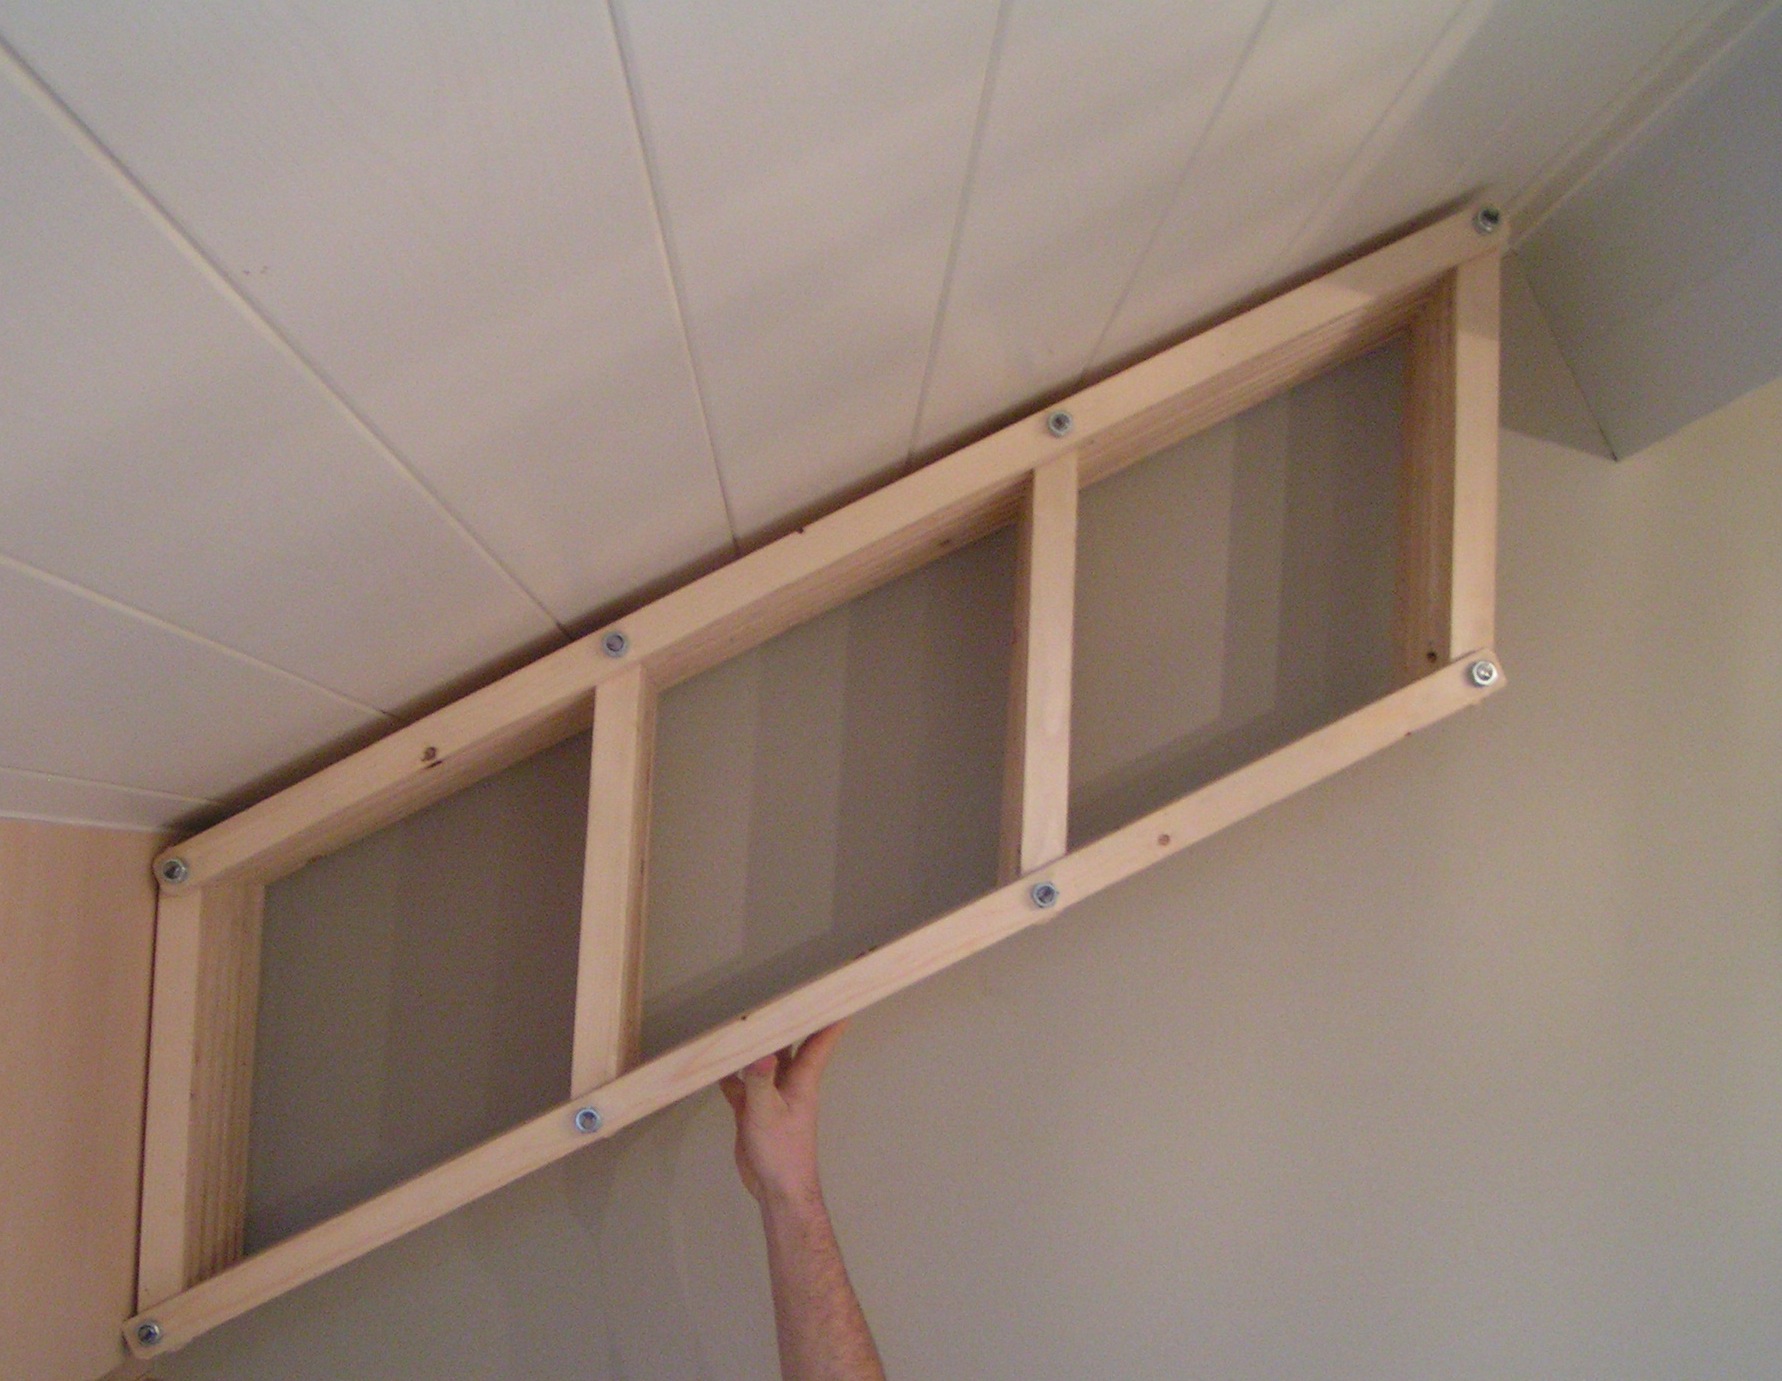 Adjustable bookshelf for angled walls